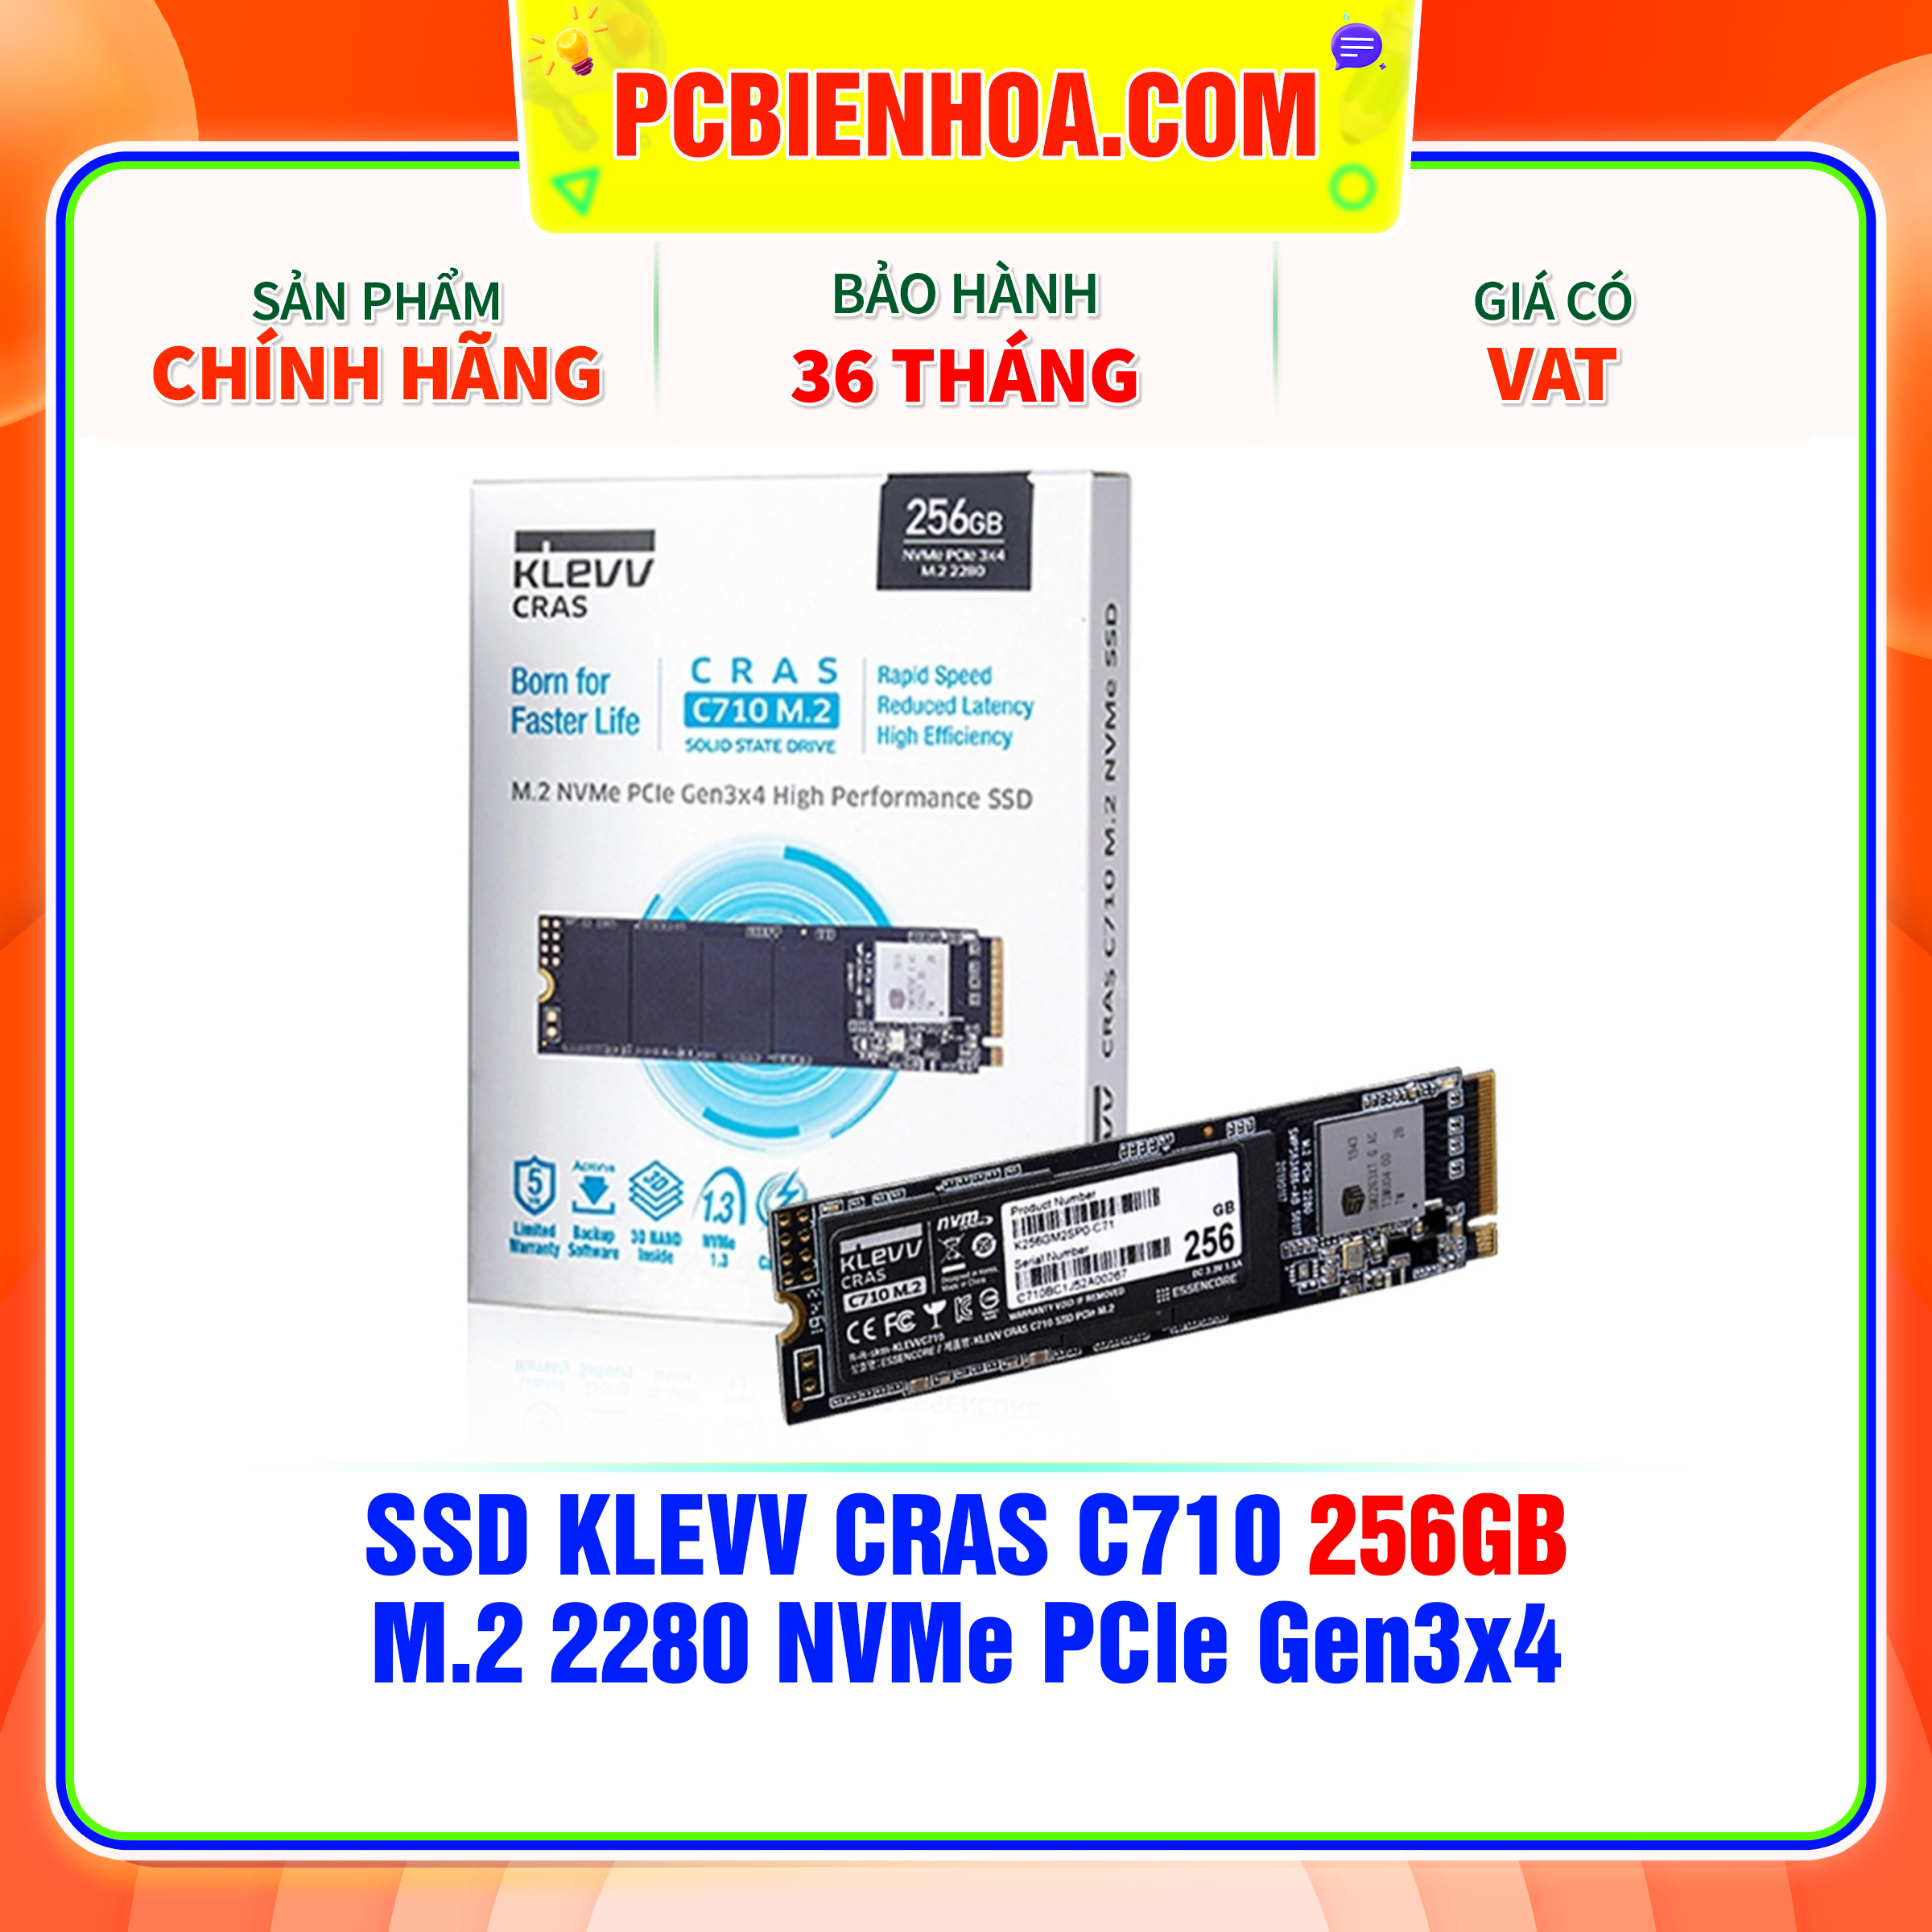 Ổ cứng SSD KLEVV CRAS C710 256GB M.2 NVME chính hãng mới 100% bảo hành 36